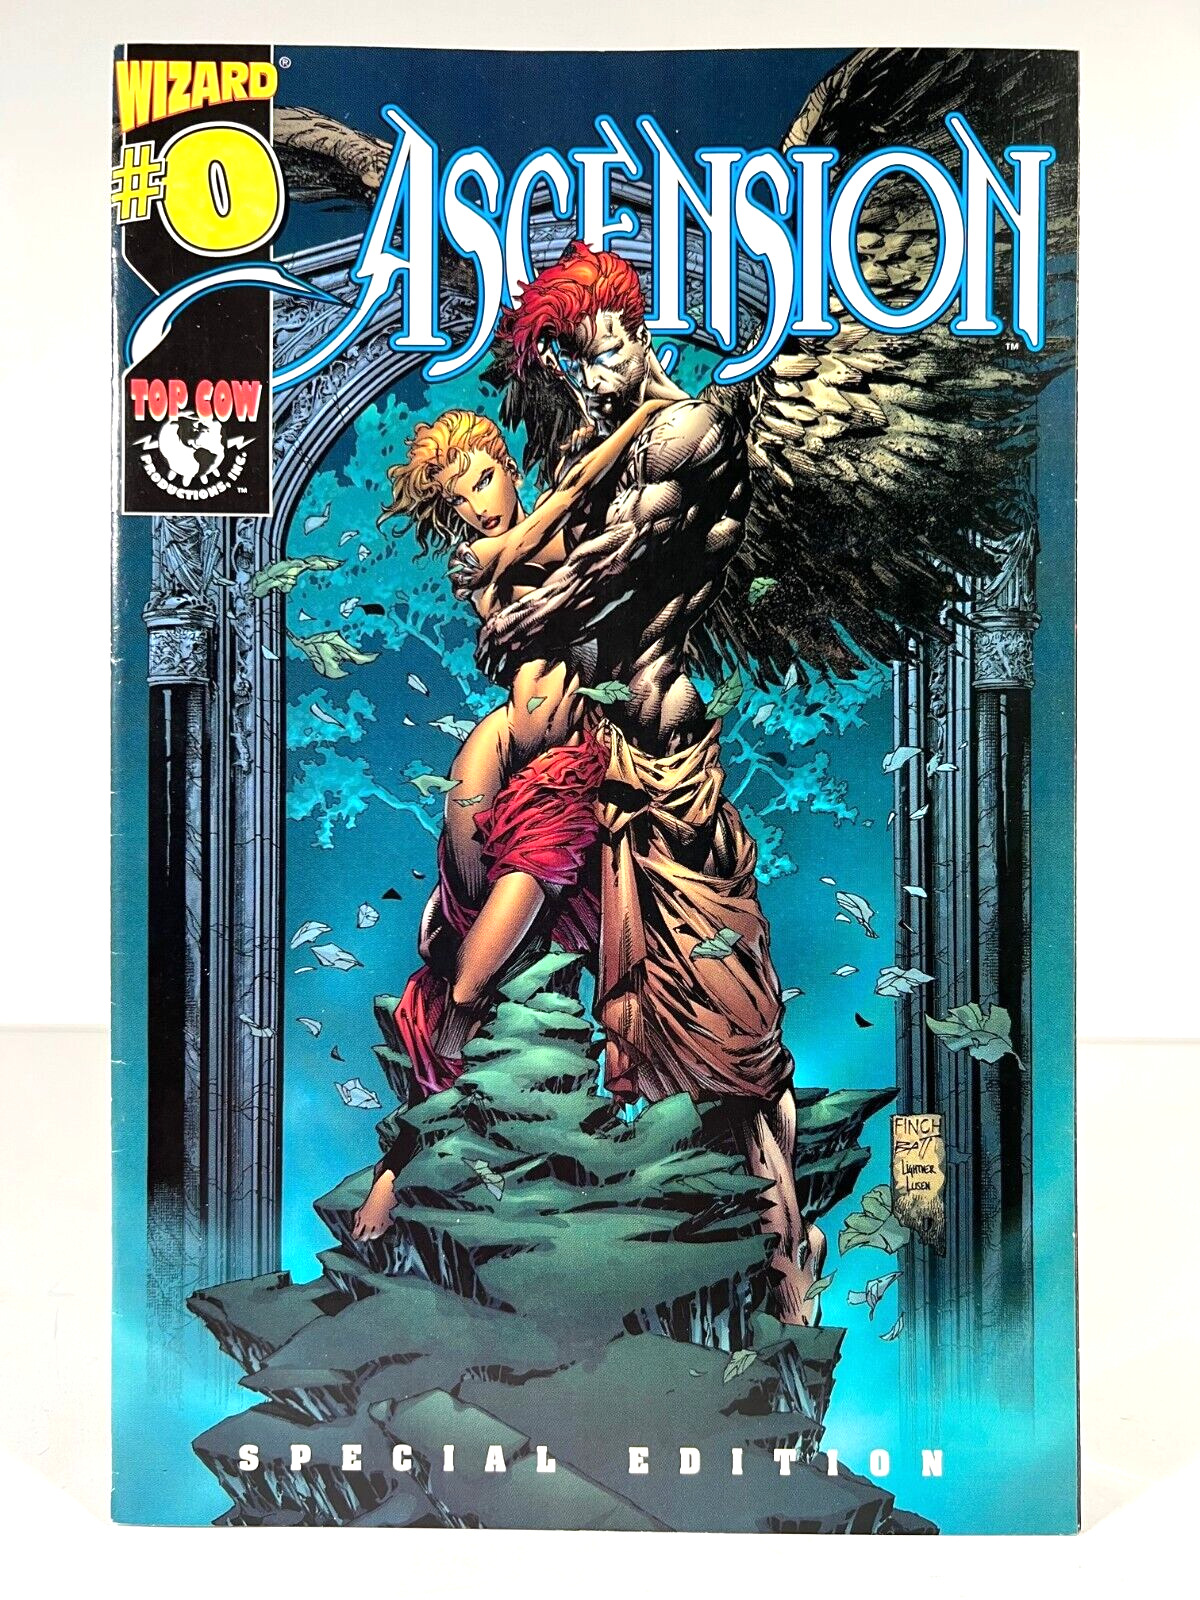 Ascension Wizard #0 Special Edition Vol. 1 Top Cow 1997